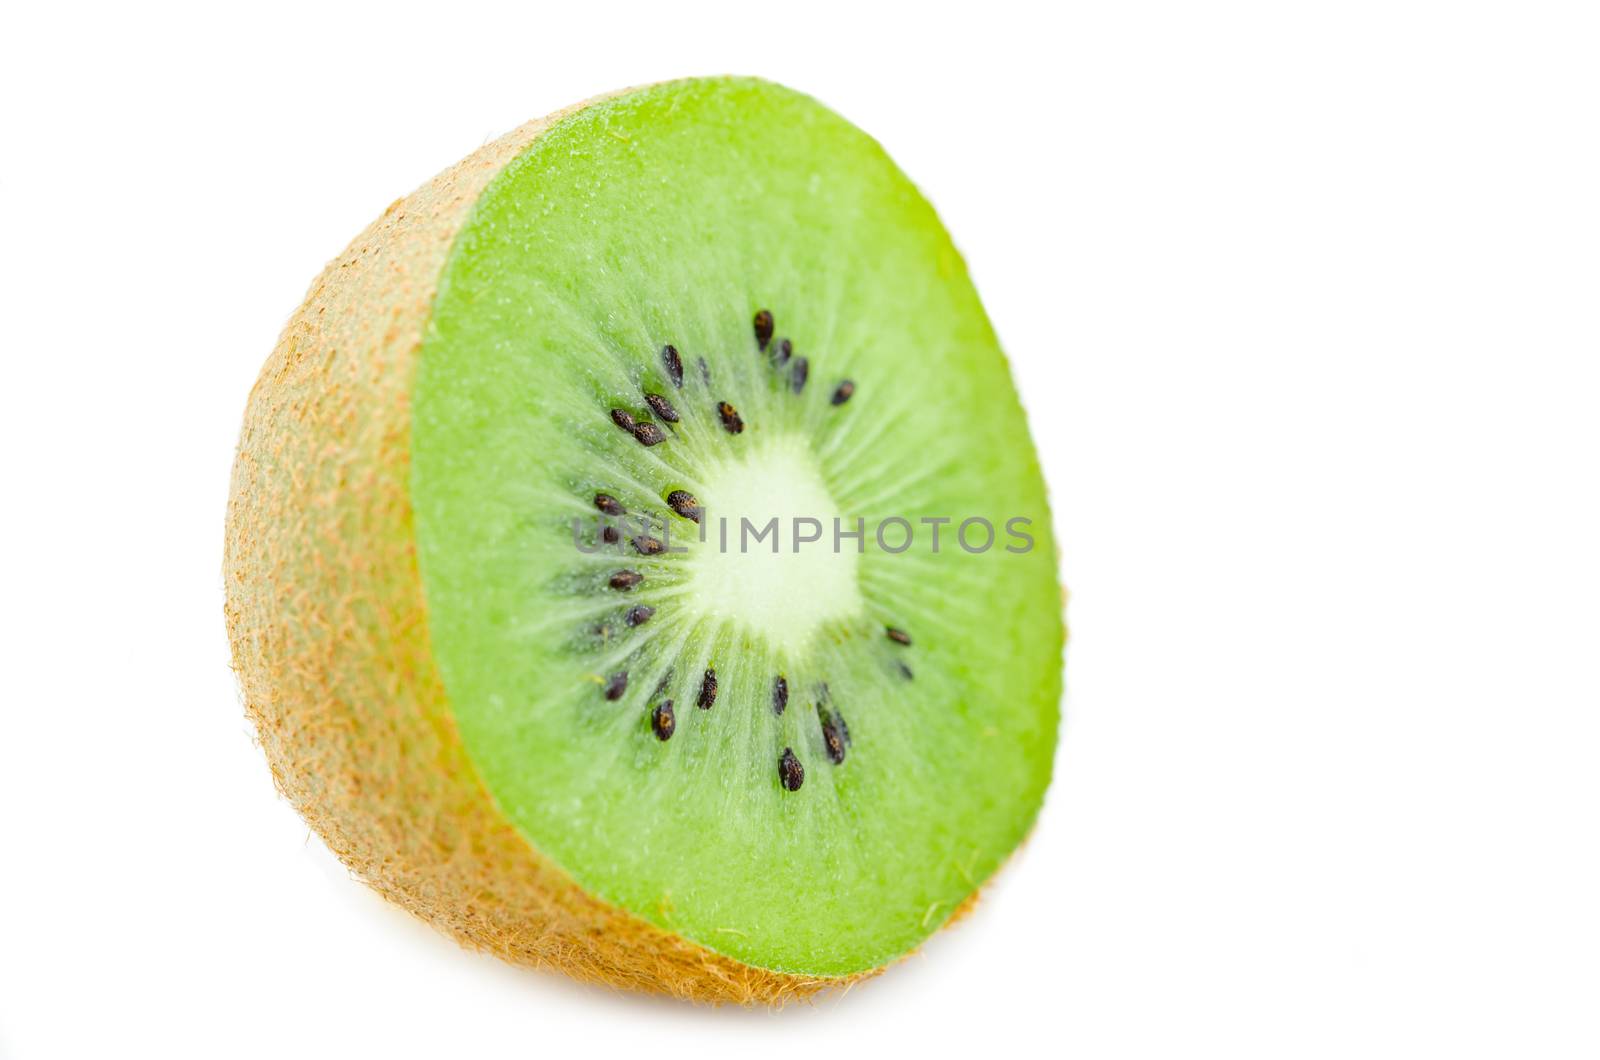 Kiwi fruits on white background.